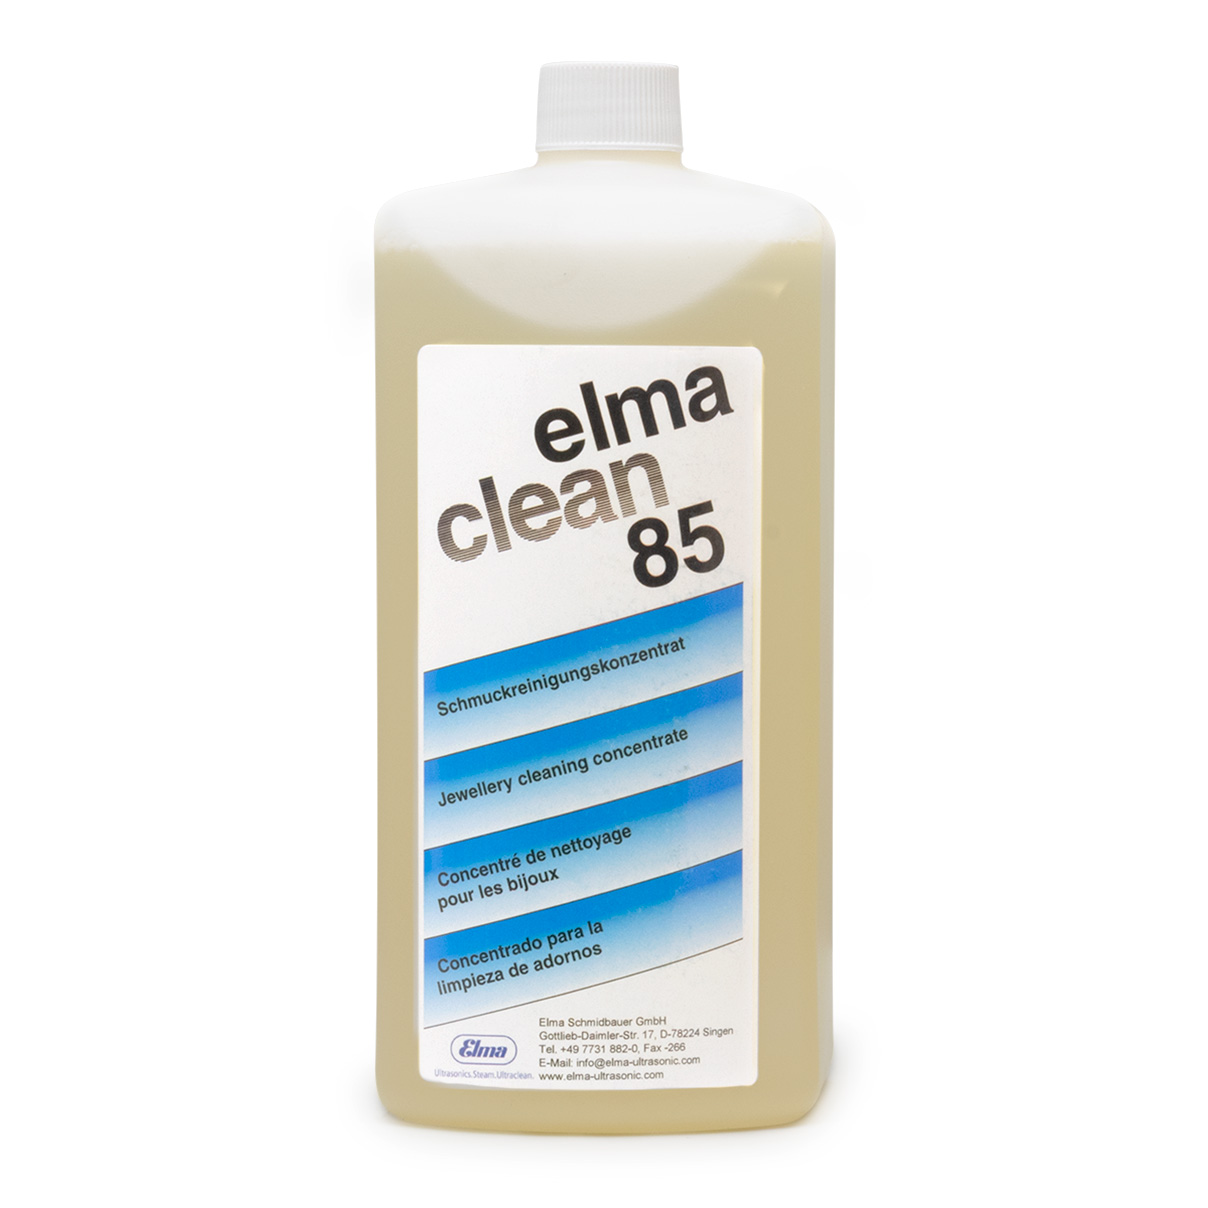 Elma Clean 85 Konzentrat für Schmuck, 1 l